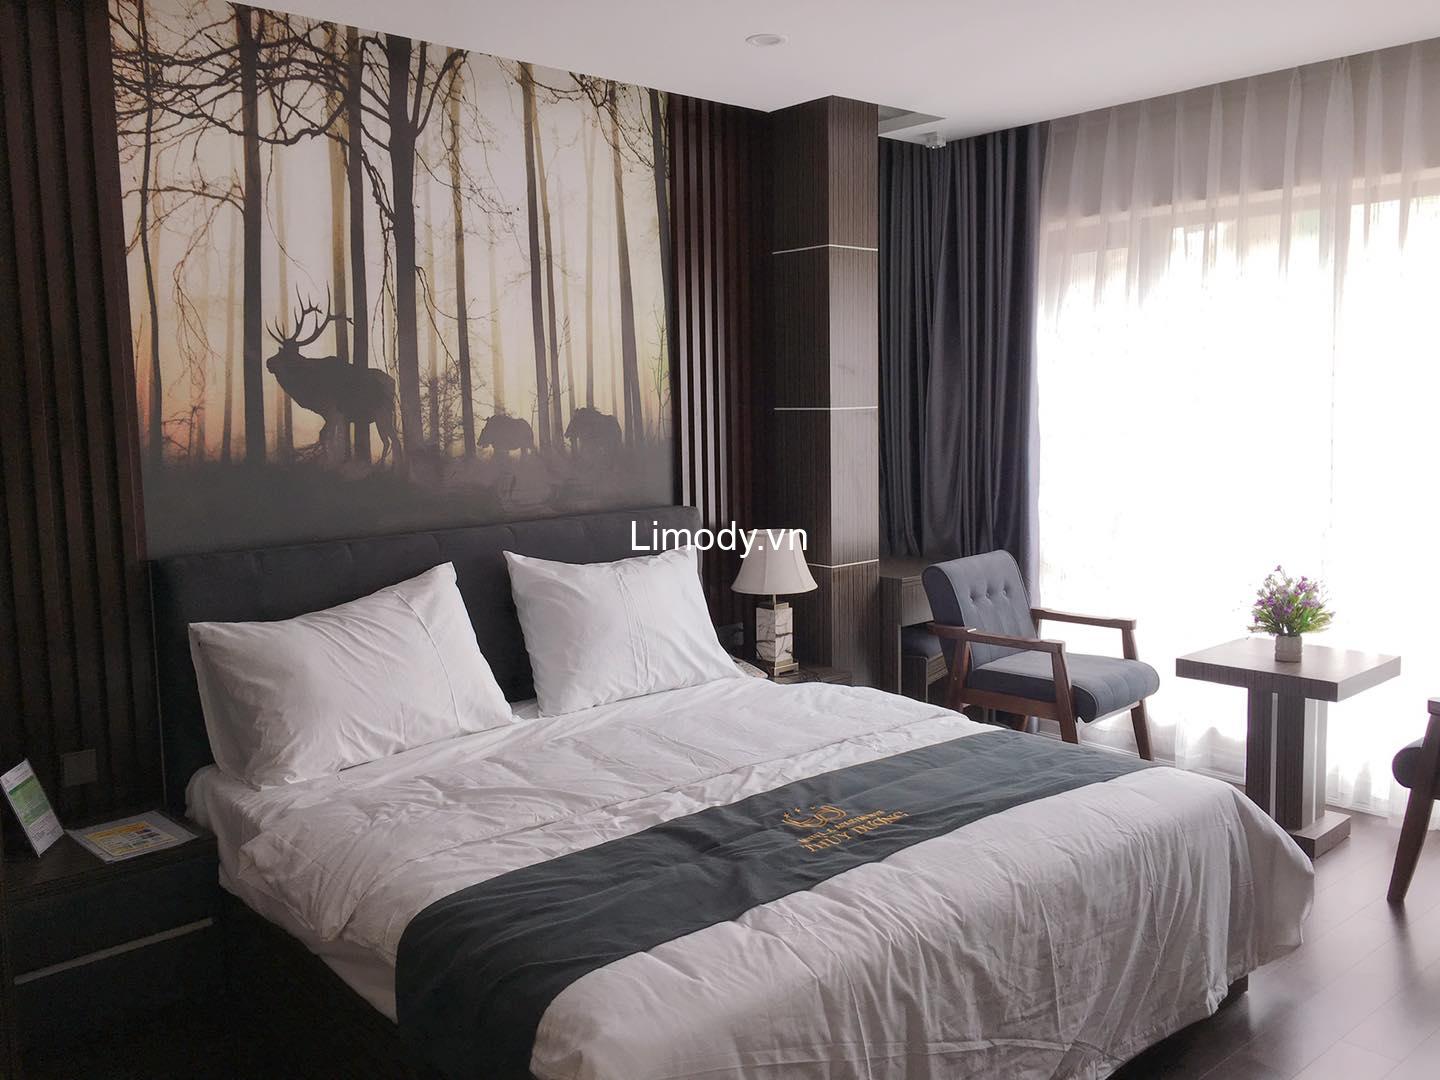 Top 10 Hostel guesthouse nhà nghỉ Hải Phòng giá rẻ view đẹp ở trung tâm